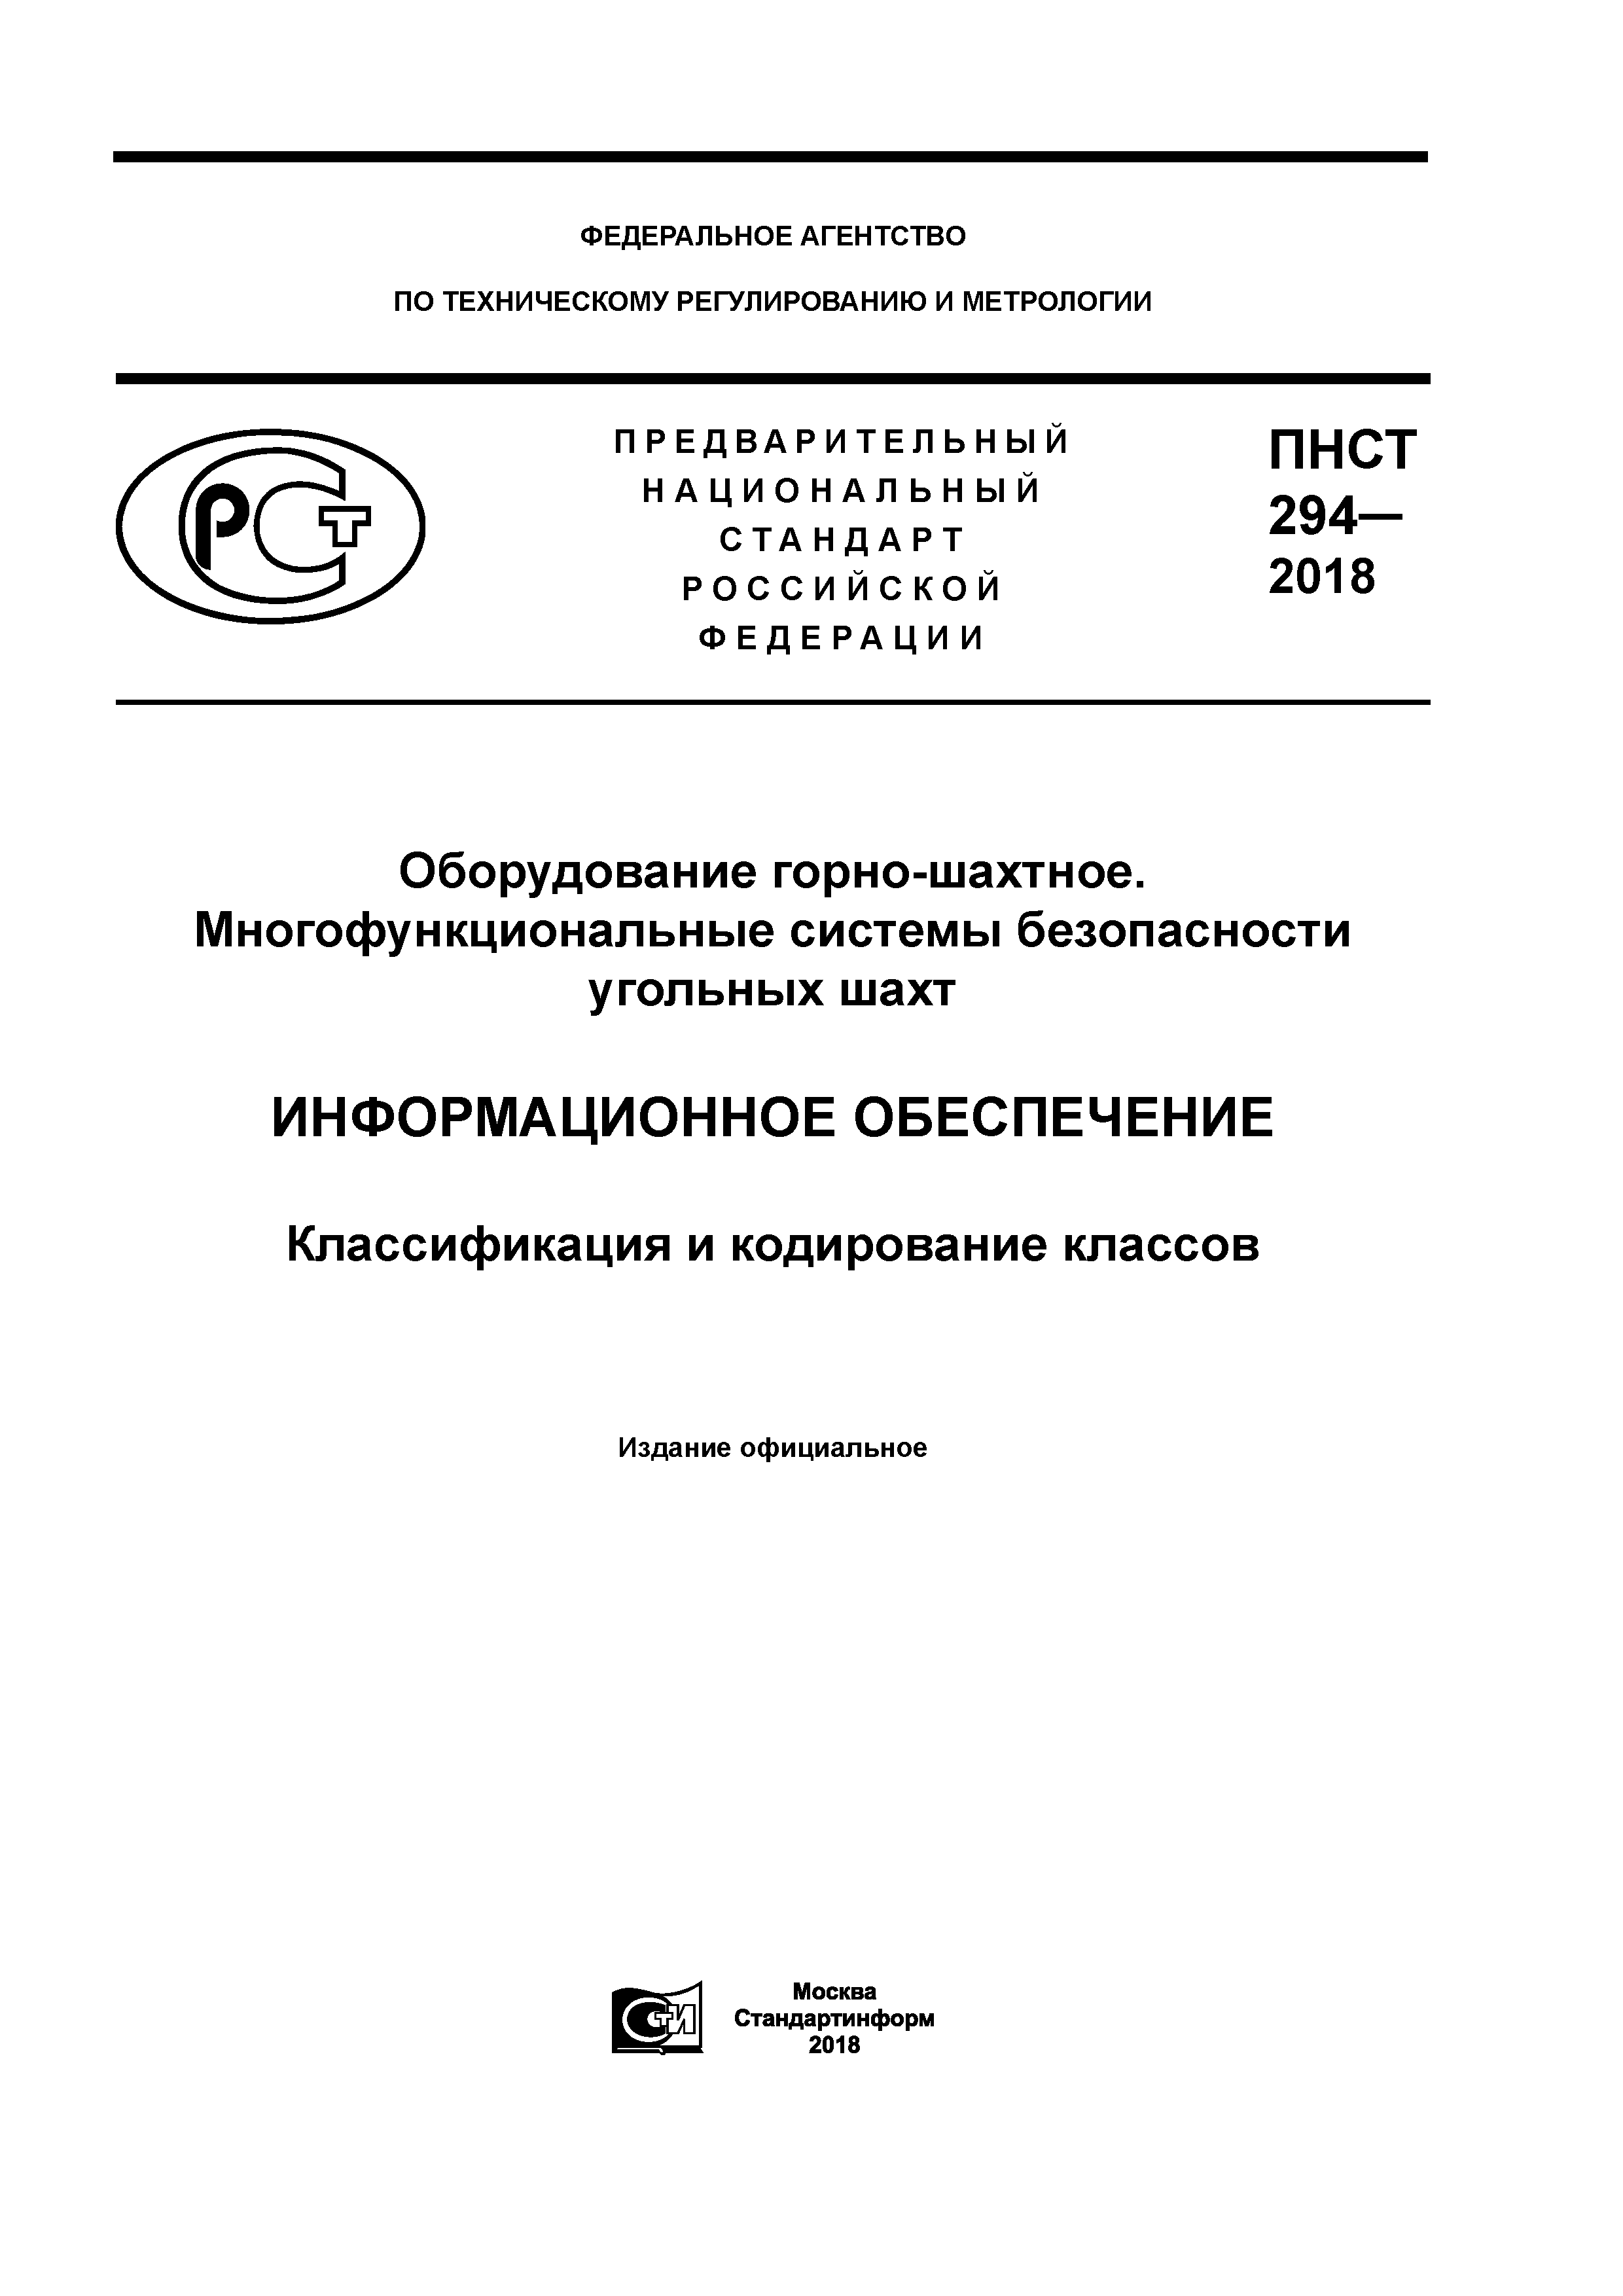 ПНСТ 294-2018